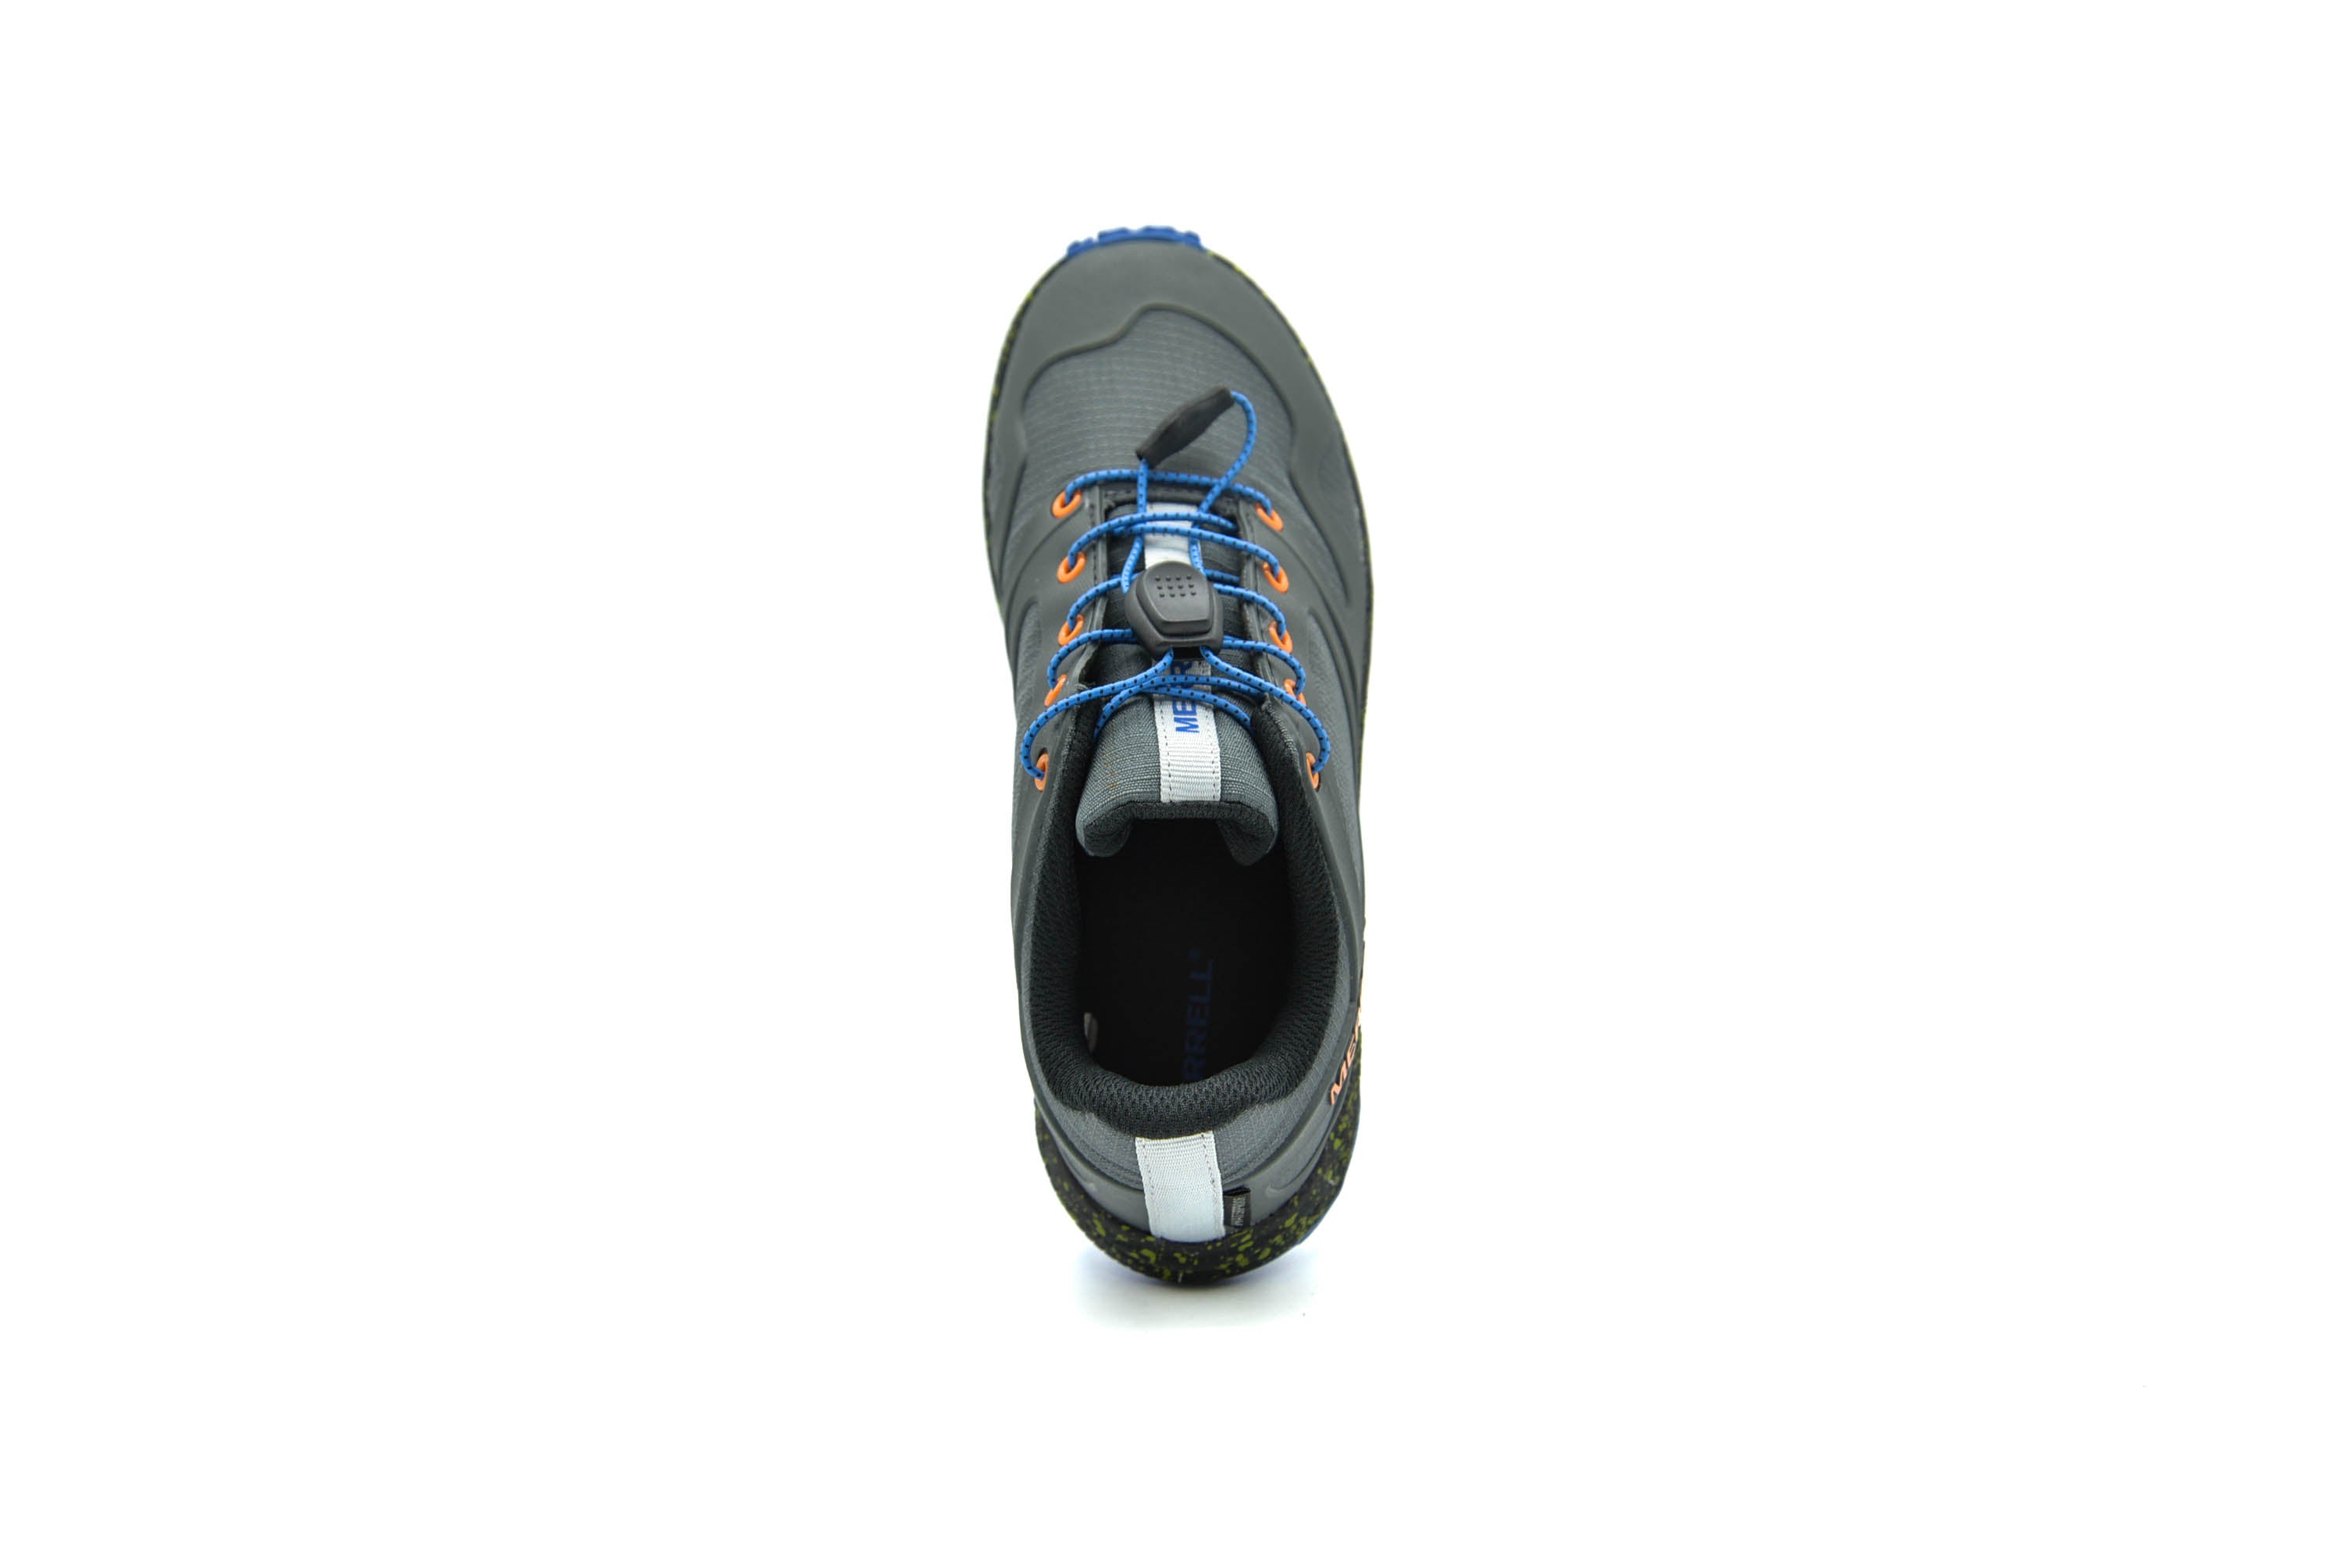 MERRELL Altalight Low A/C Waterproof Shoe